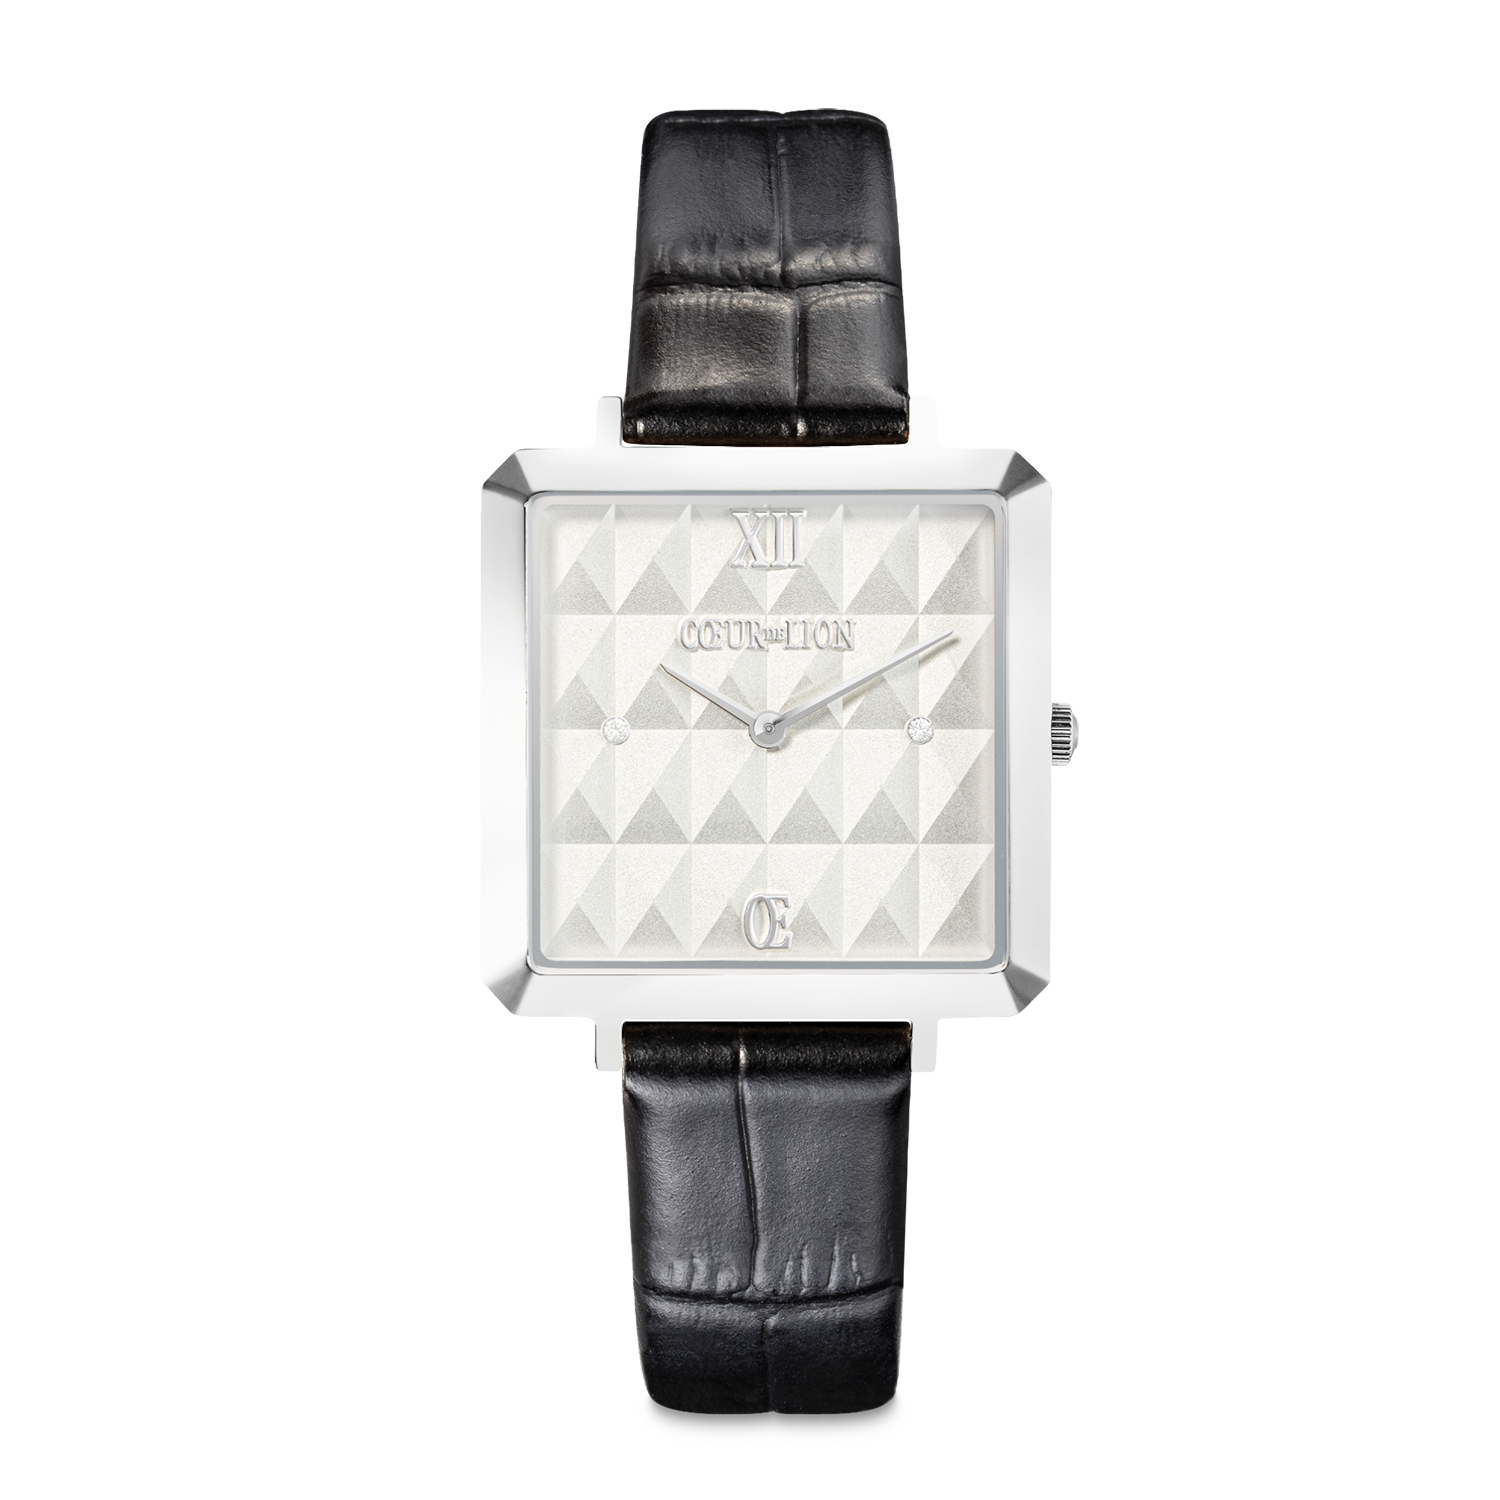 Gift Set Watch Iconic Cube Spikes Black & Bracelet Princess Shape Mix Black-White